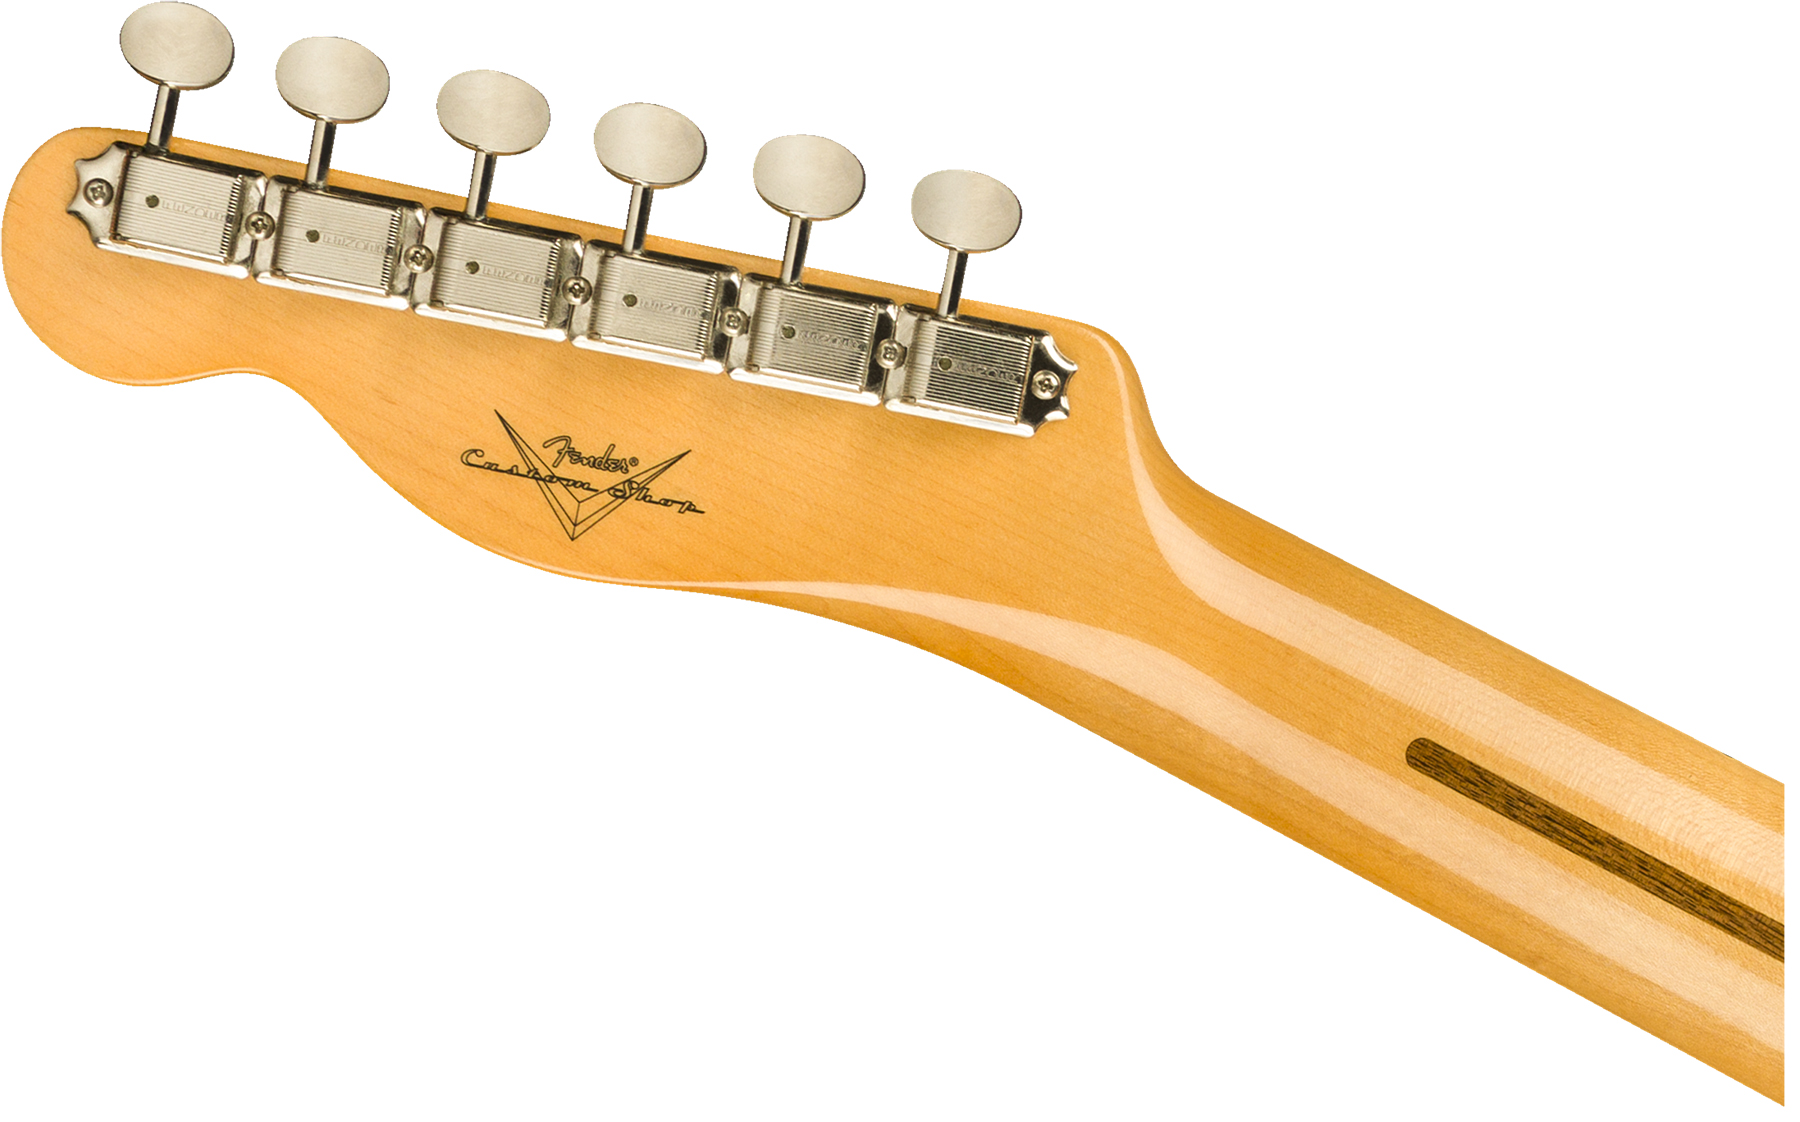 Fender Custom Shop Tele Vintage Custom 1958 Top Load Ltd Mn - Nos Aged White Blonde - Televorm elektrische gitaar - Variation 3